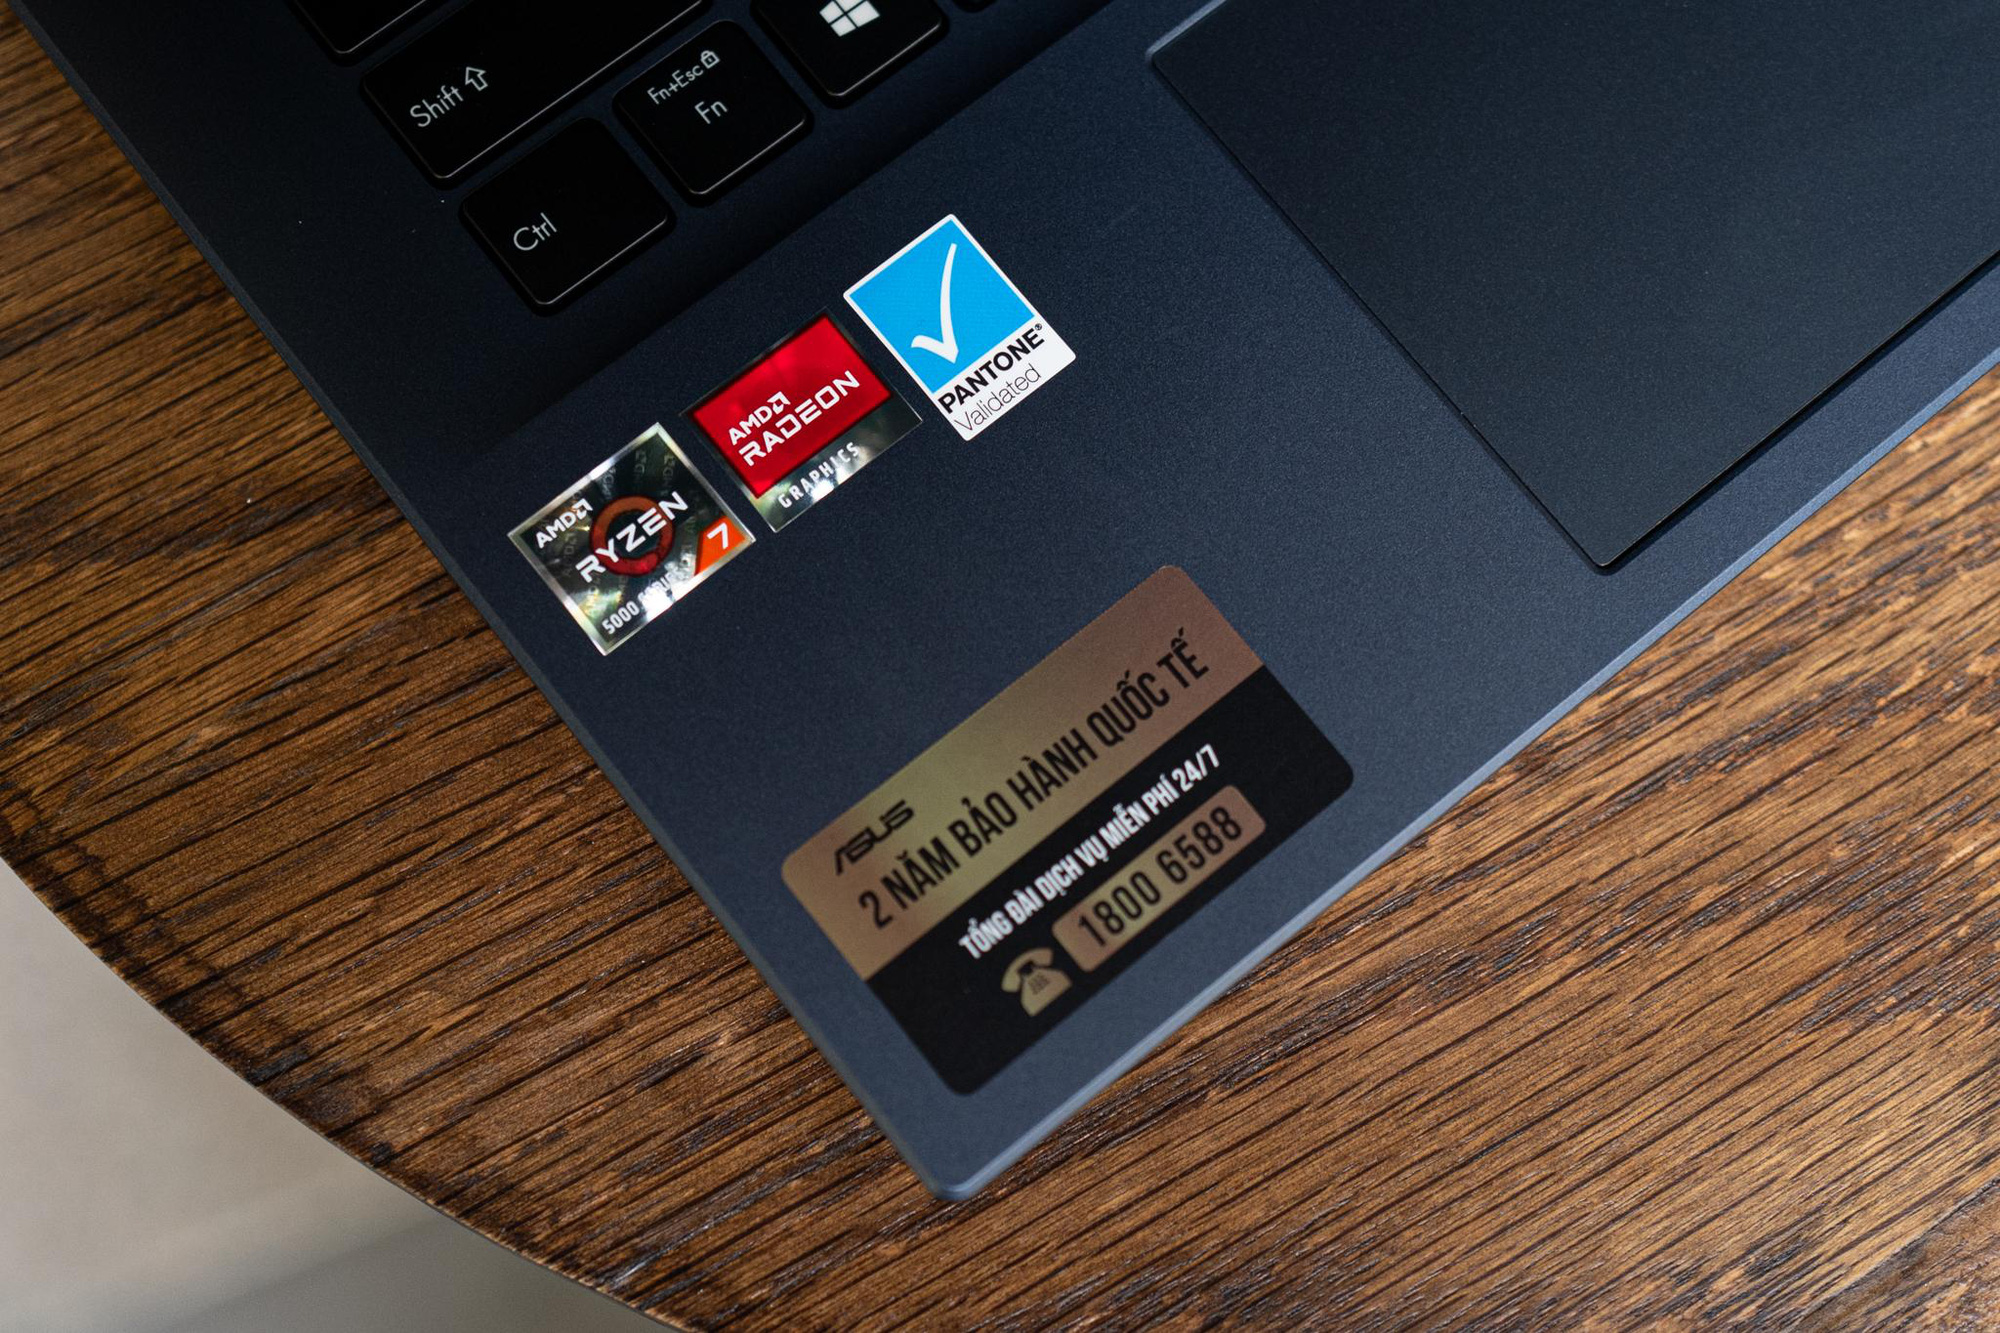 Đánh giá ASUS VivoBook 14 OLED: Sự kết hợp vẹn toàn giữa hiệu năng AMD 8 nhân và màn hình OLED chất lượng cao - Ảnh 8.